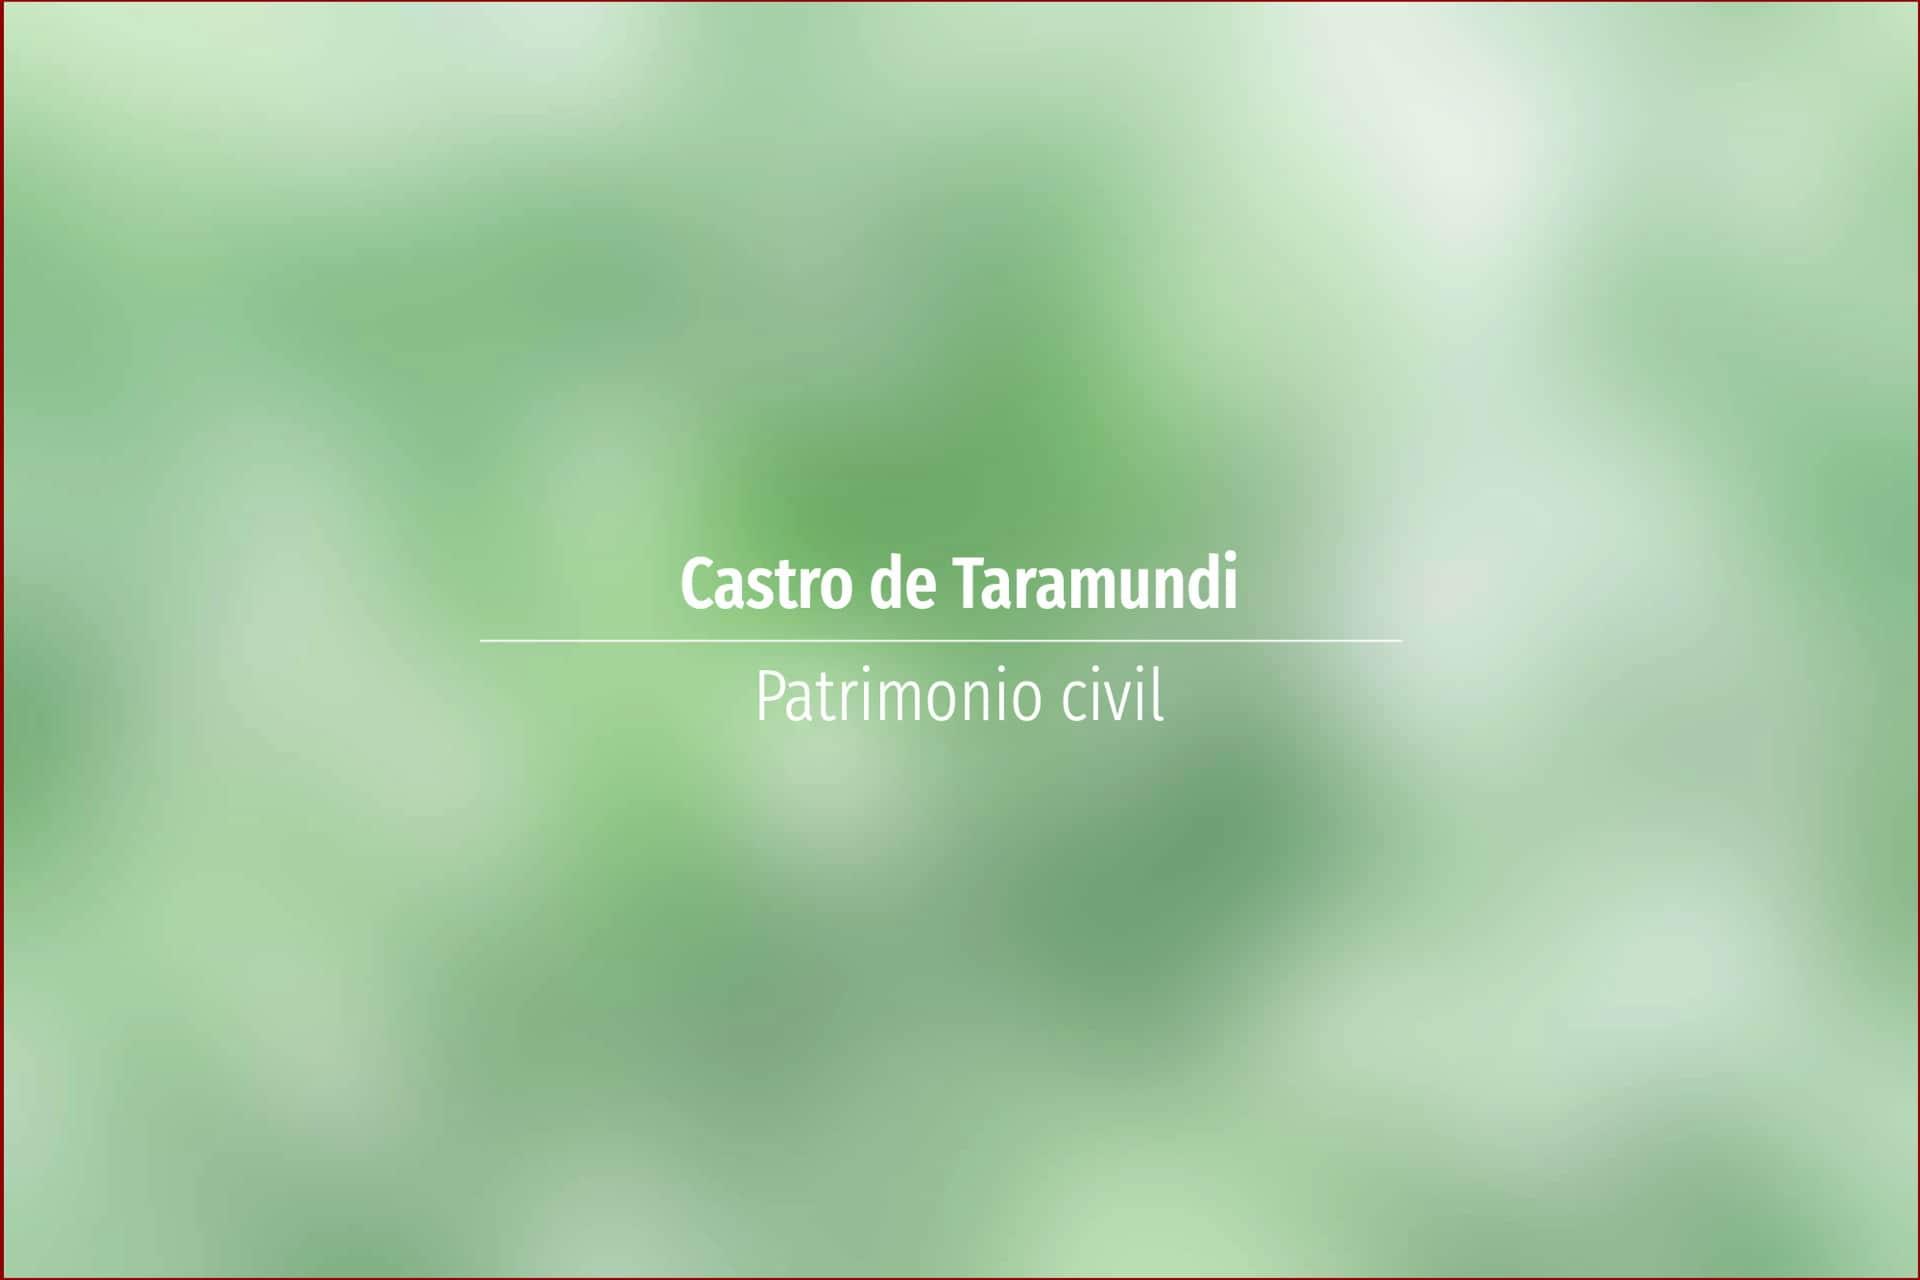 Castro de Taramundi